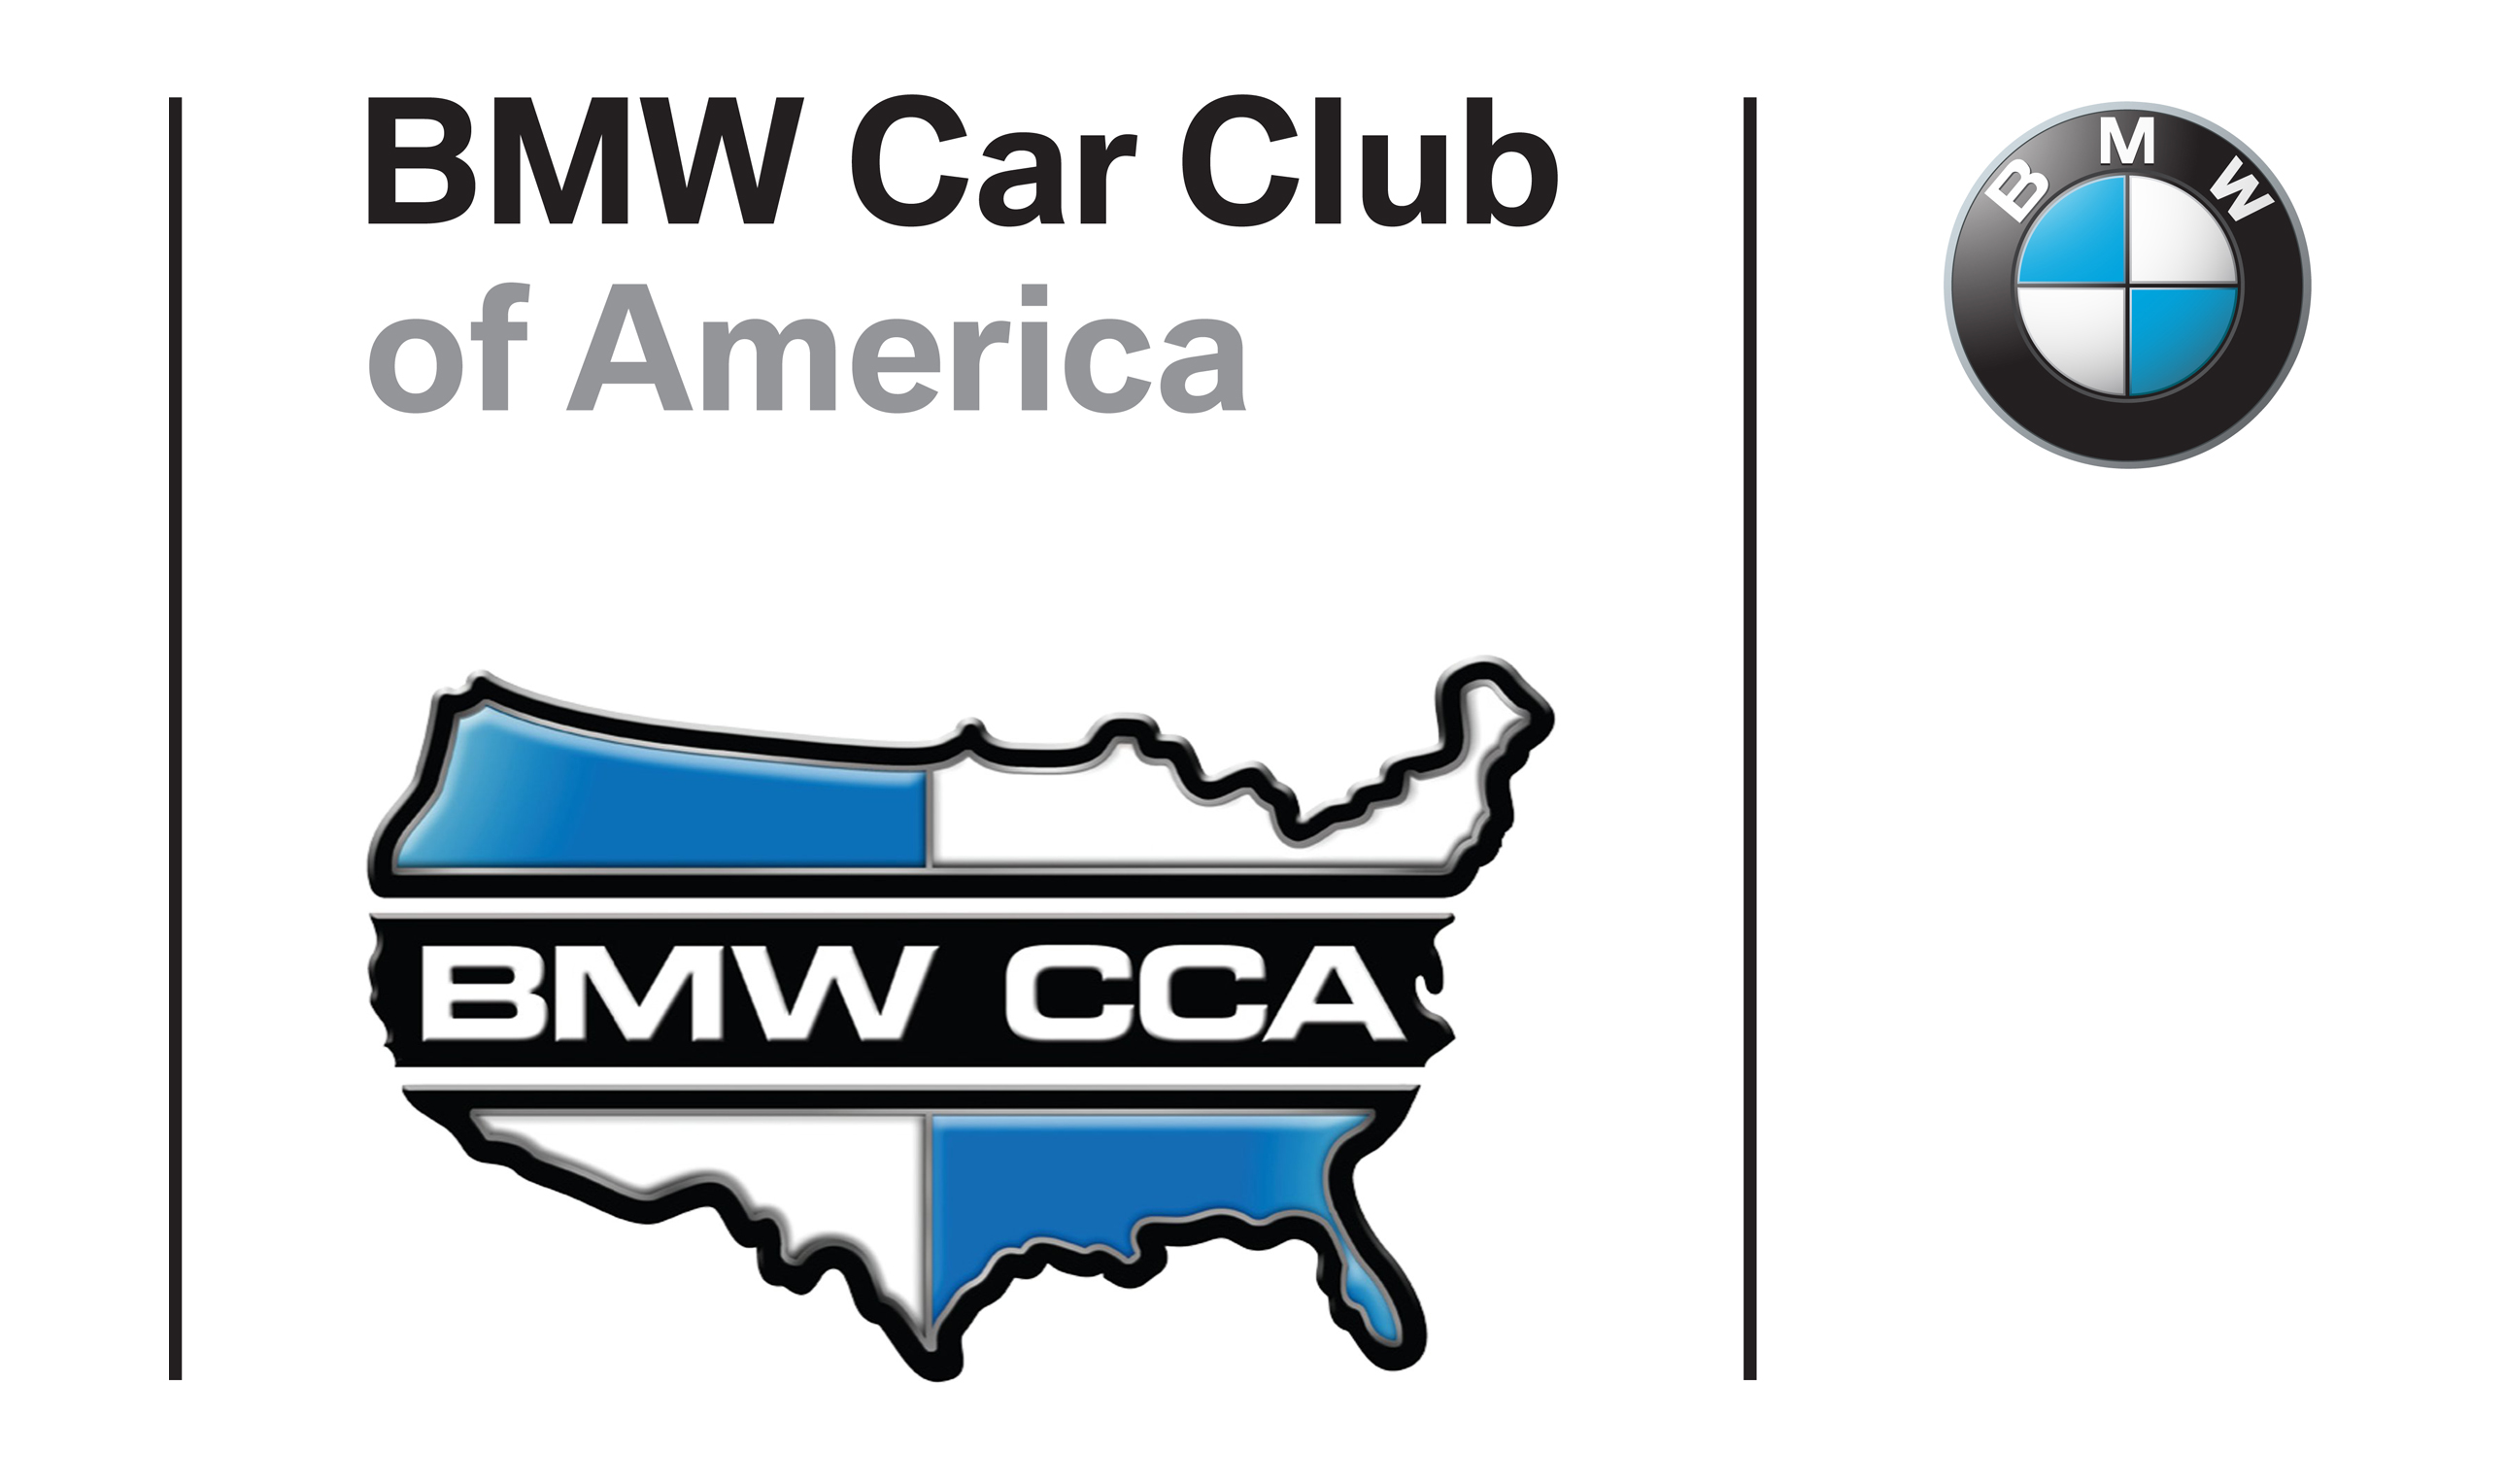 bmw-cca-car-club-of-america-oficial-parrilla-insignia-emblema-m